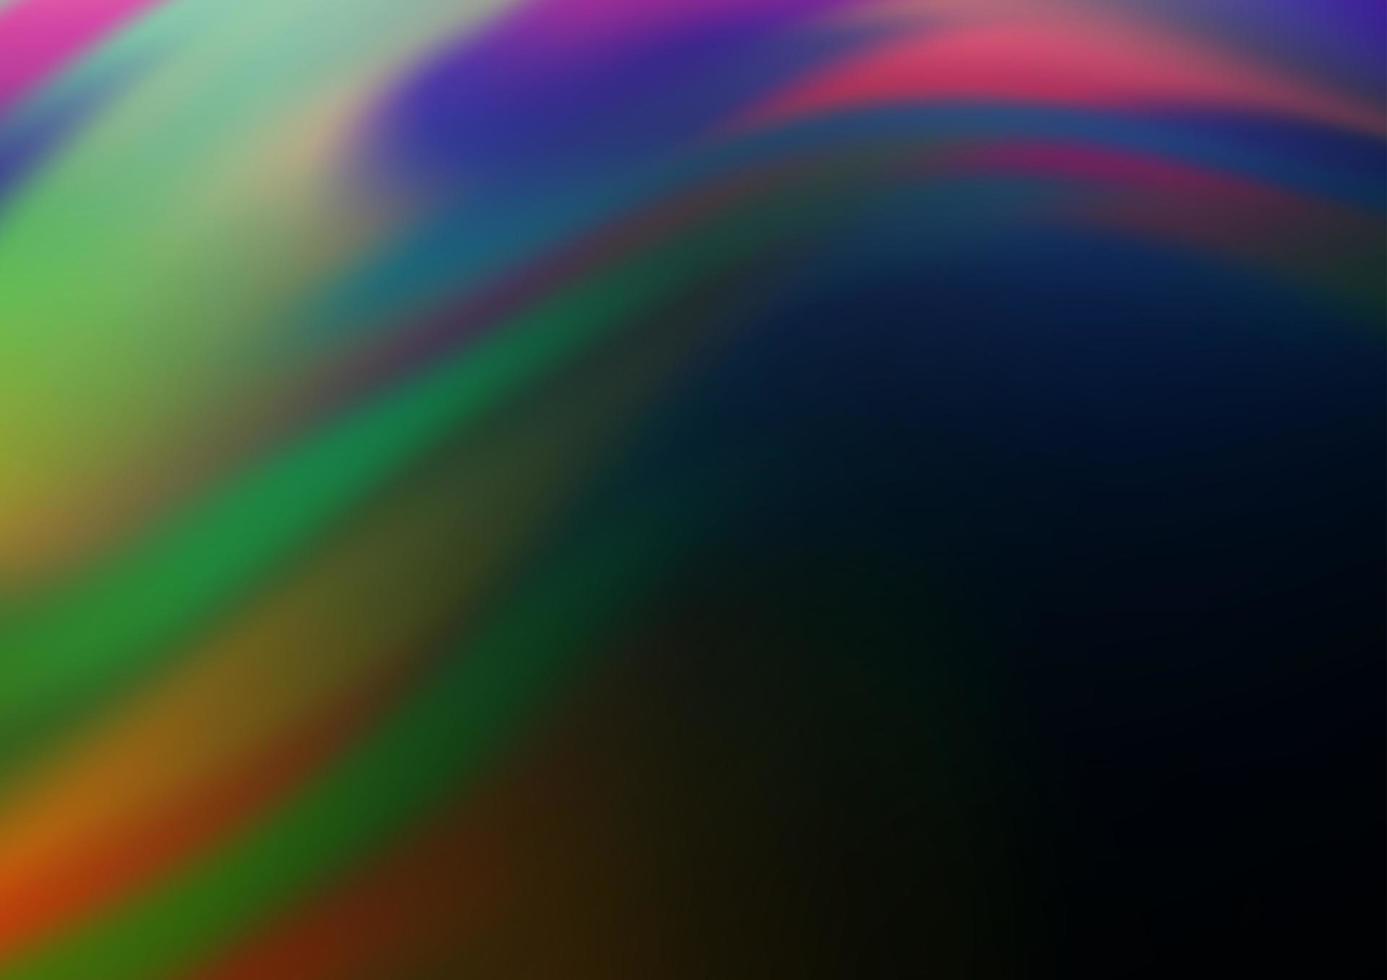 modelo de vetor de arco-íris multicolorido escuro com linhas dobradas.